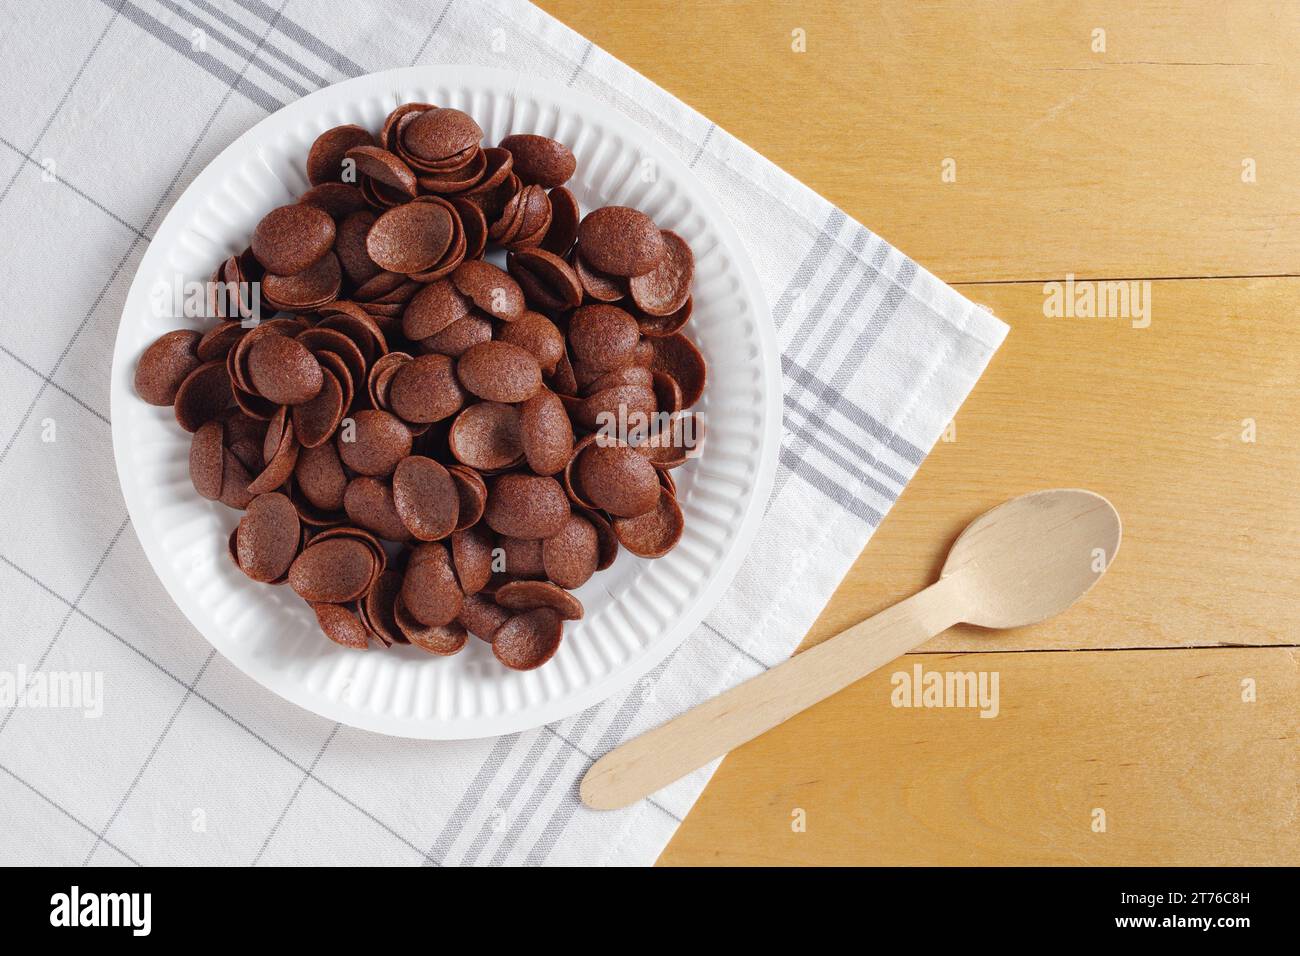 Directamente encima de la vista del desayuno de cereales de chocolate en plato desechable de cartón sobre mesa de madera Foto de stock